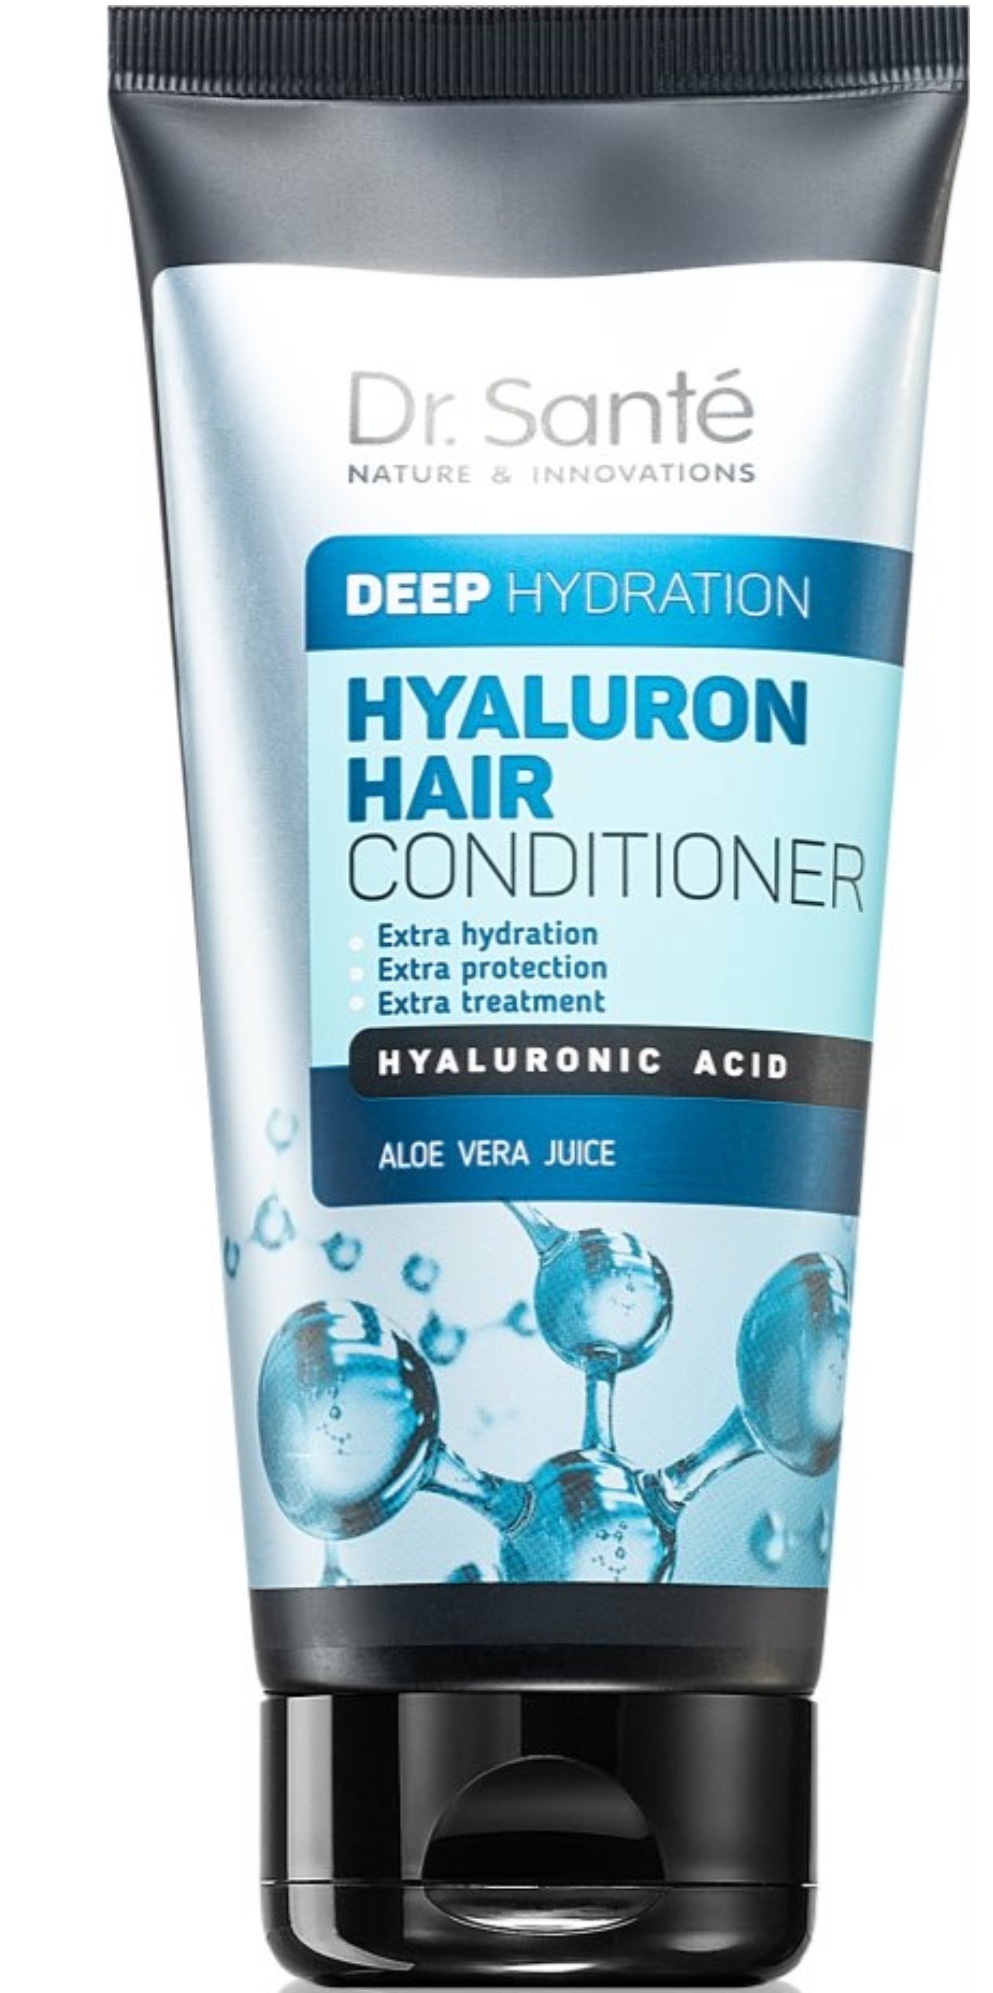 Dr. Santé Hyaluron Hair Conditioner